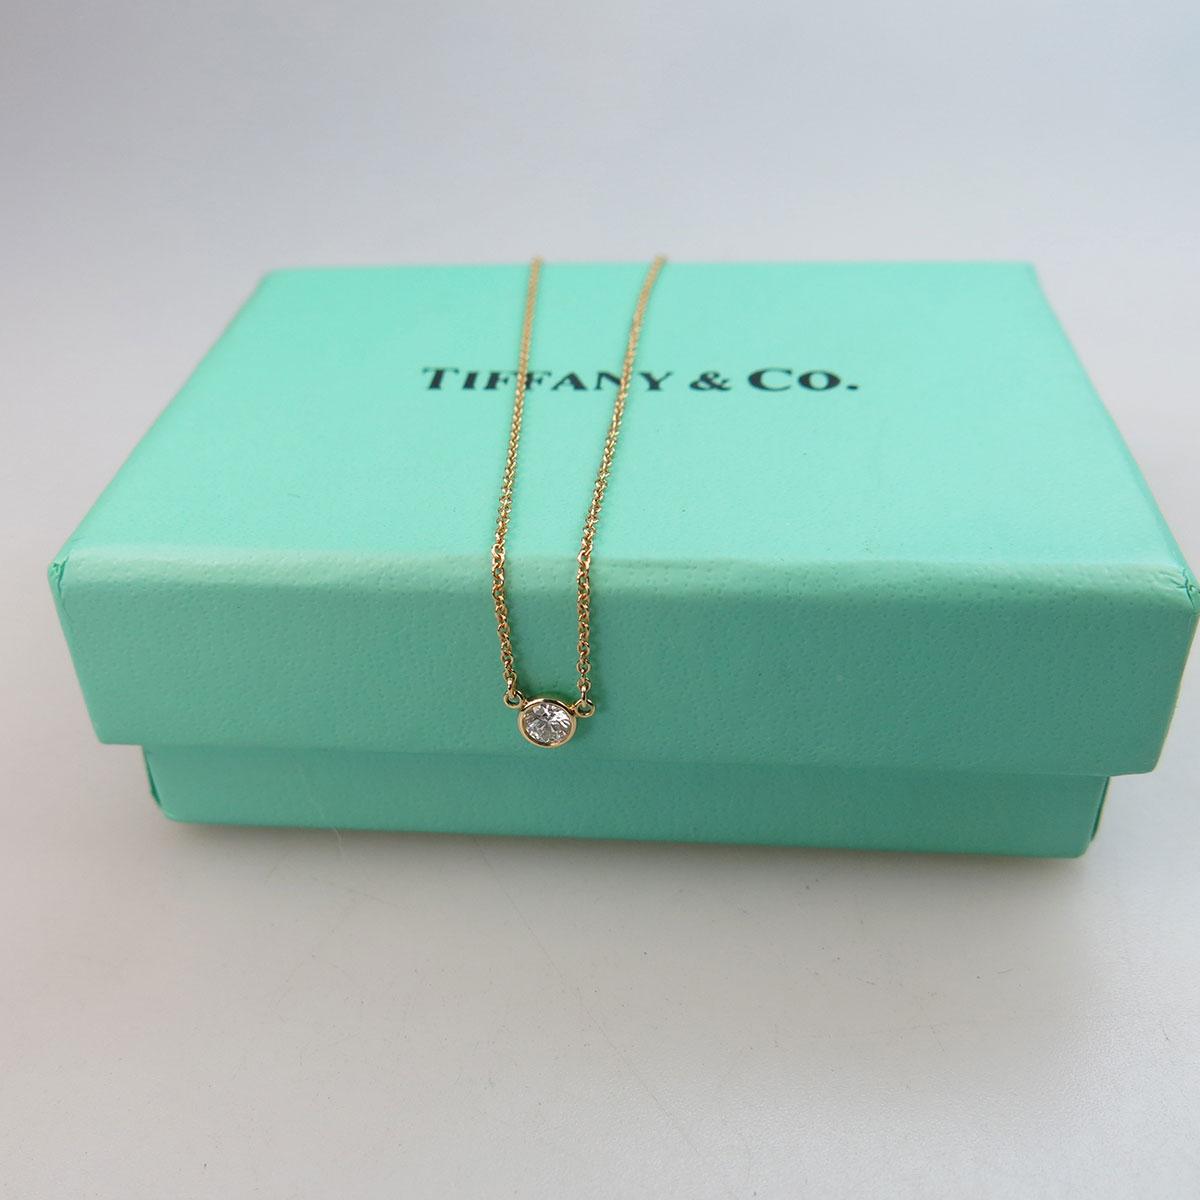 Tiffany & Co. Elsa Peretti 18k Yellow Gold Chain